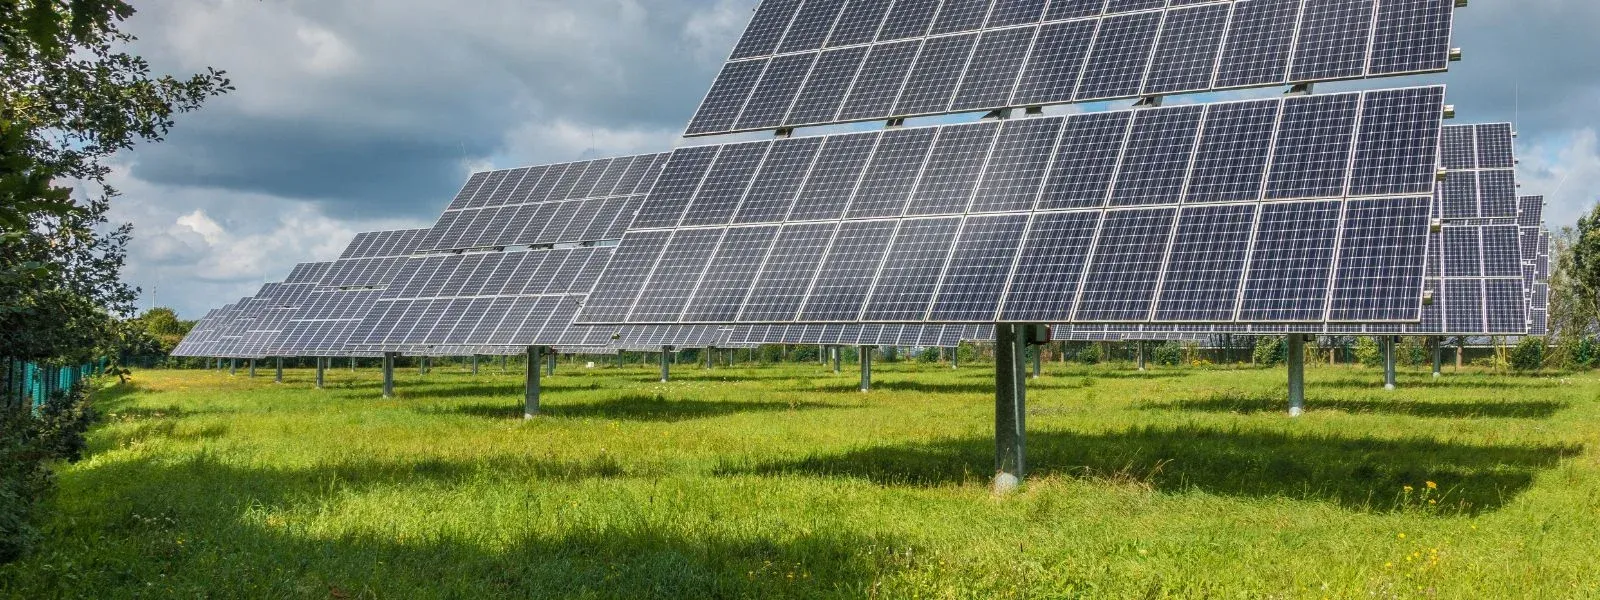 Transformace zelené energie: Vliv solárních panelů